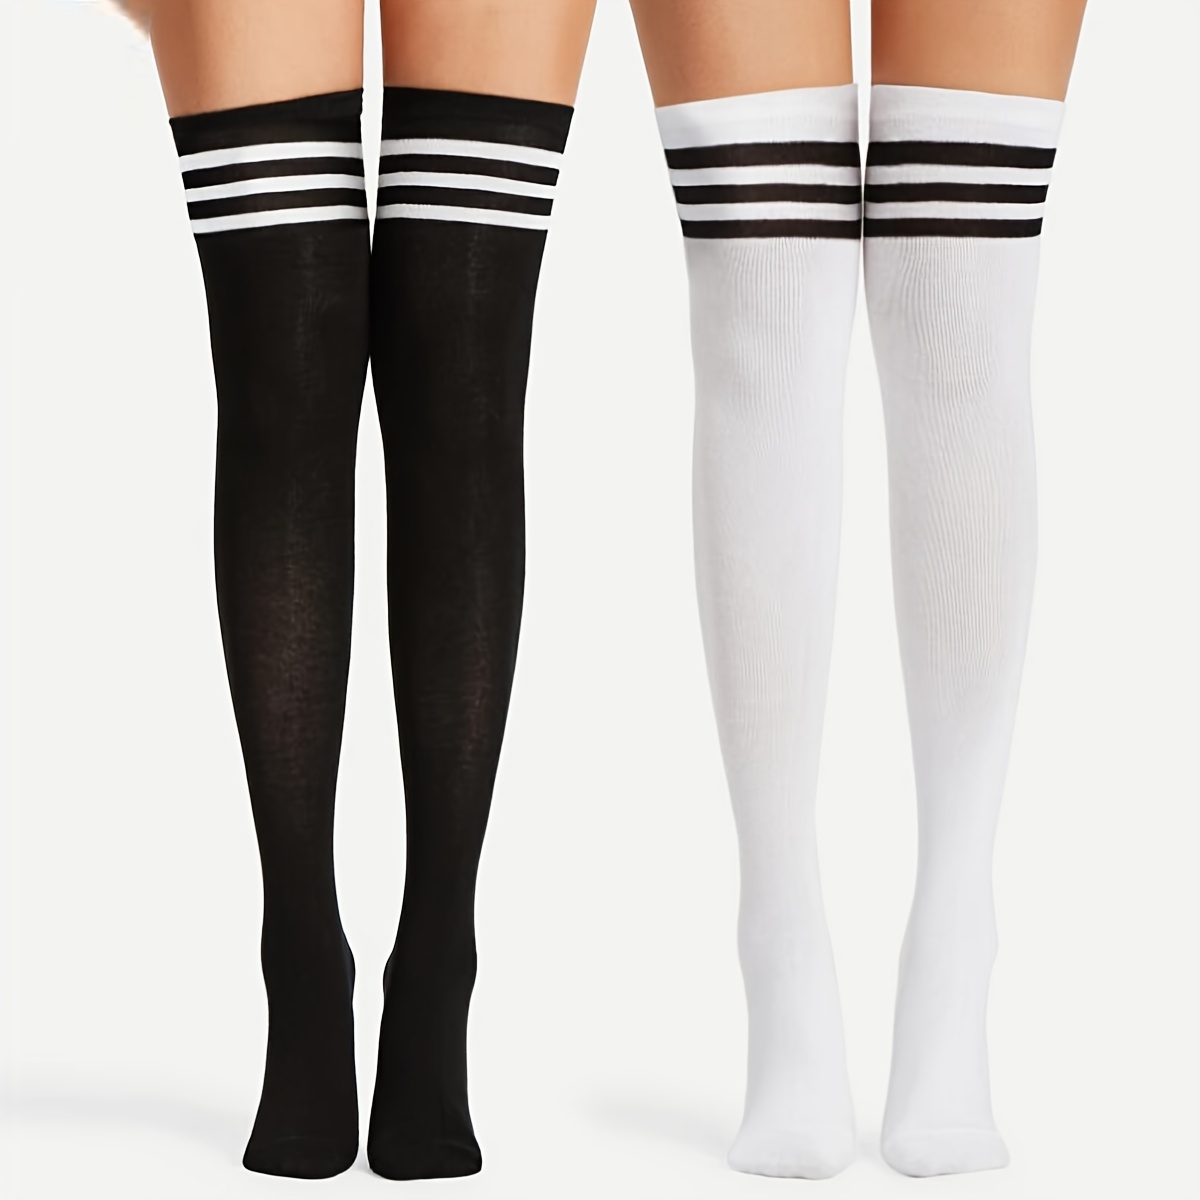 Acquista Calzini a righe da donna Divertenti calze sexy alte alla coscia  lunghe Abbigliamento carino sopra i calzini al ginocchio